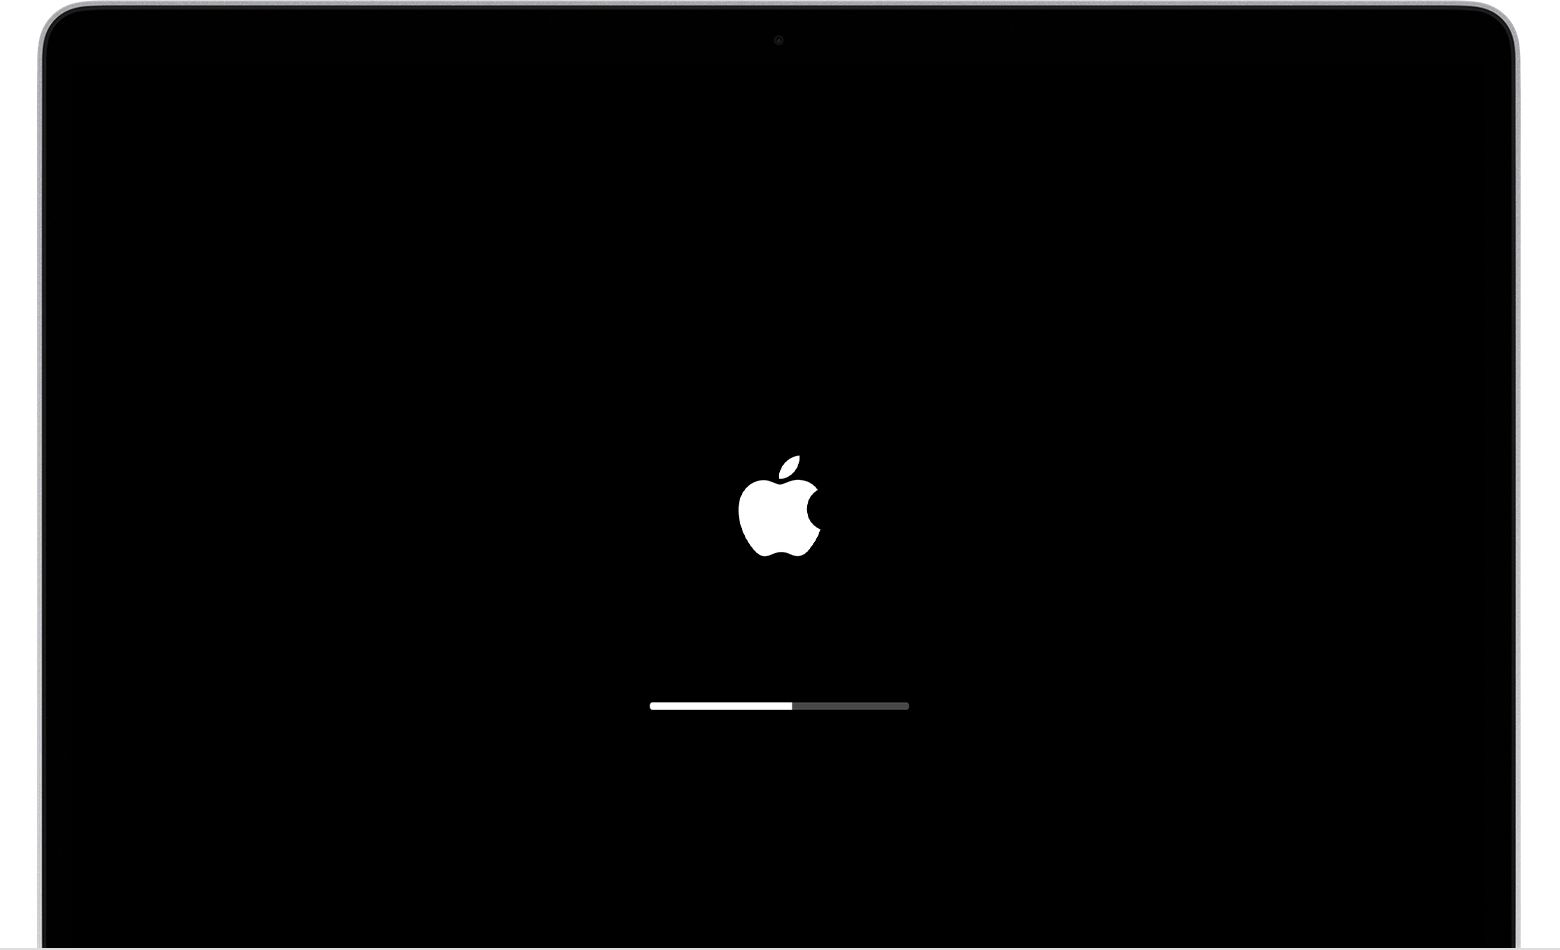 Reinicie o Mac e mantenha pressionadas as teclas Command + R até que o logotipo da Apple ou a barra de progresso apareça.
Selecione o utilitário Utilitários do macOS na tela de recuperação.